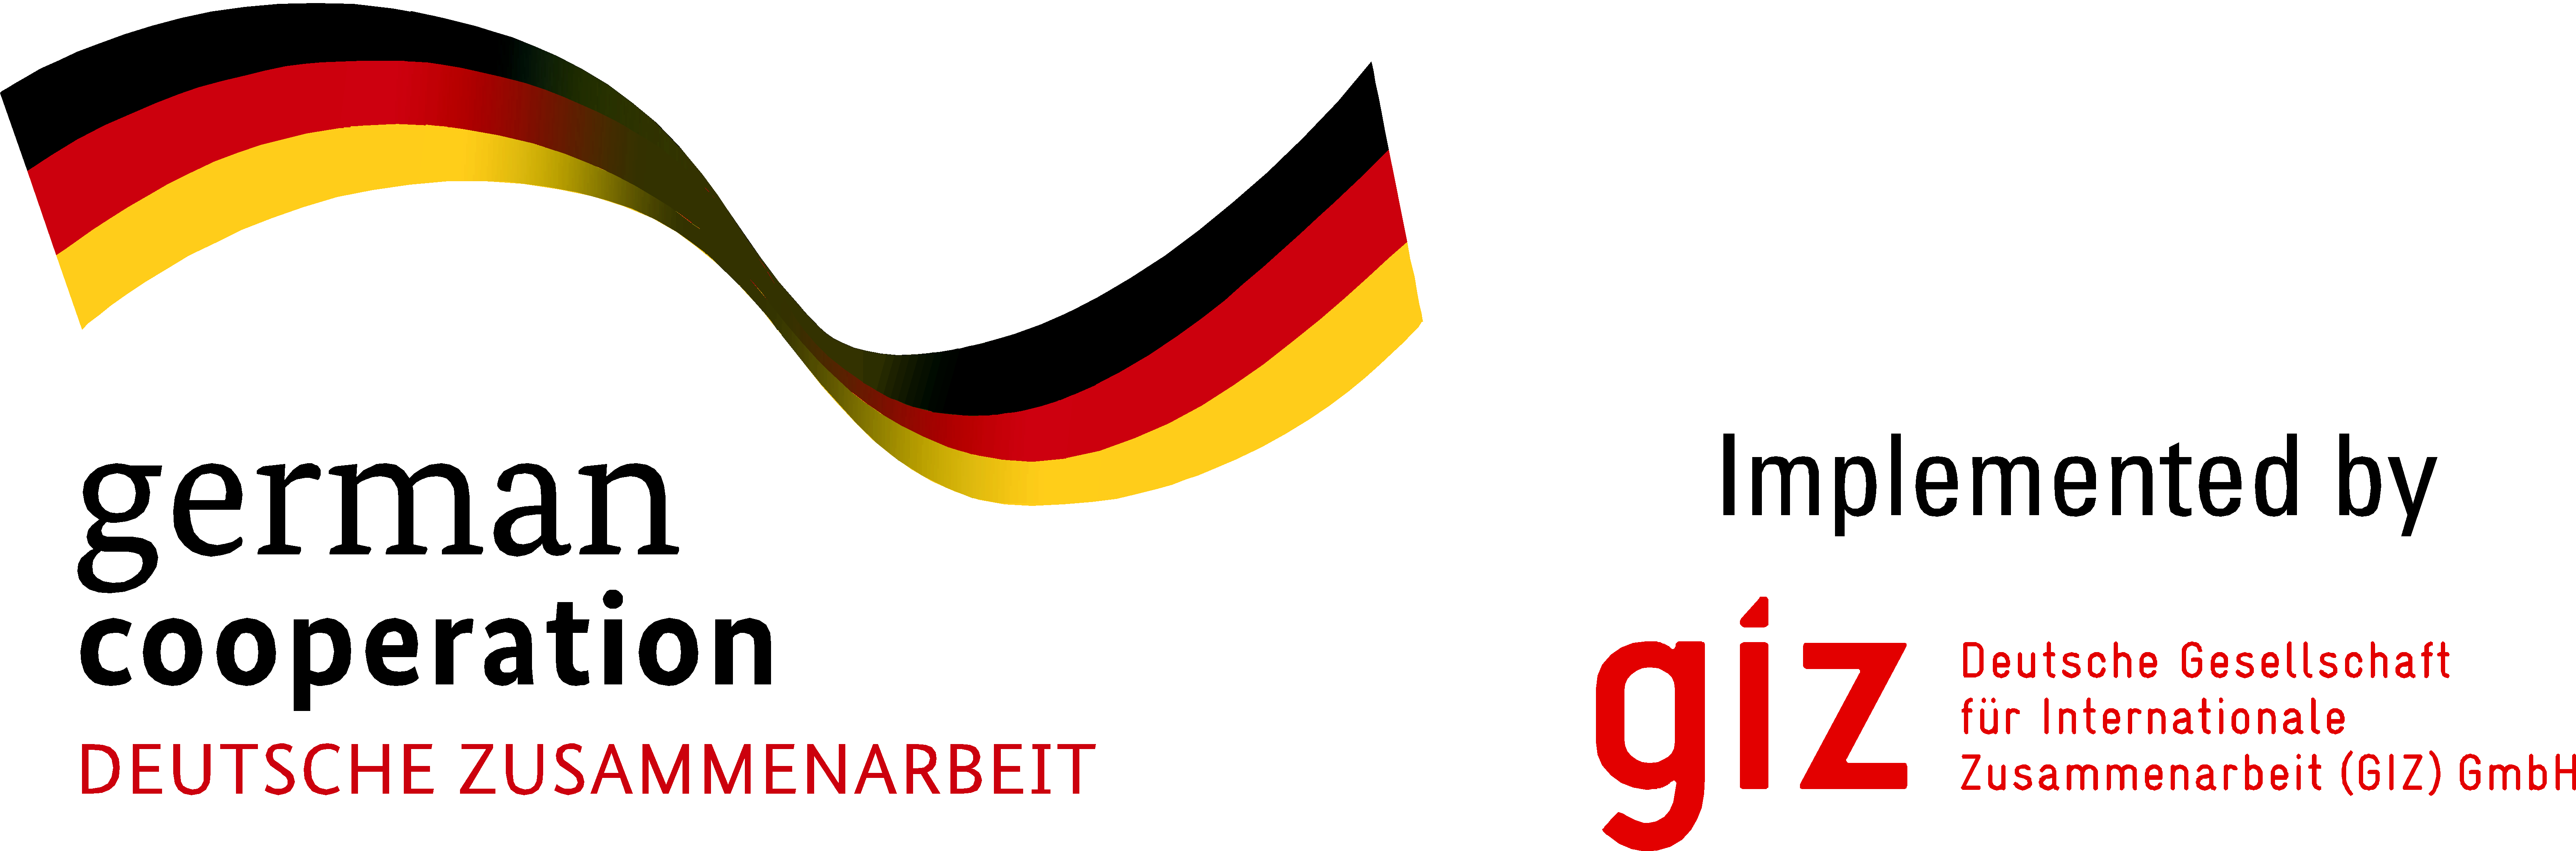 الوكالة الألمانية للتعاون الدولي GIZ